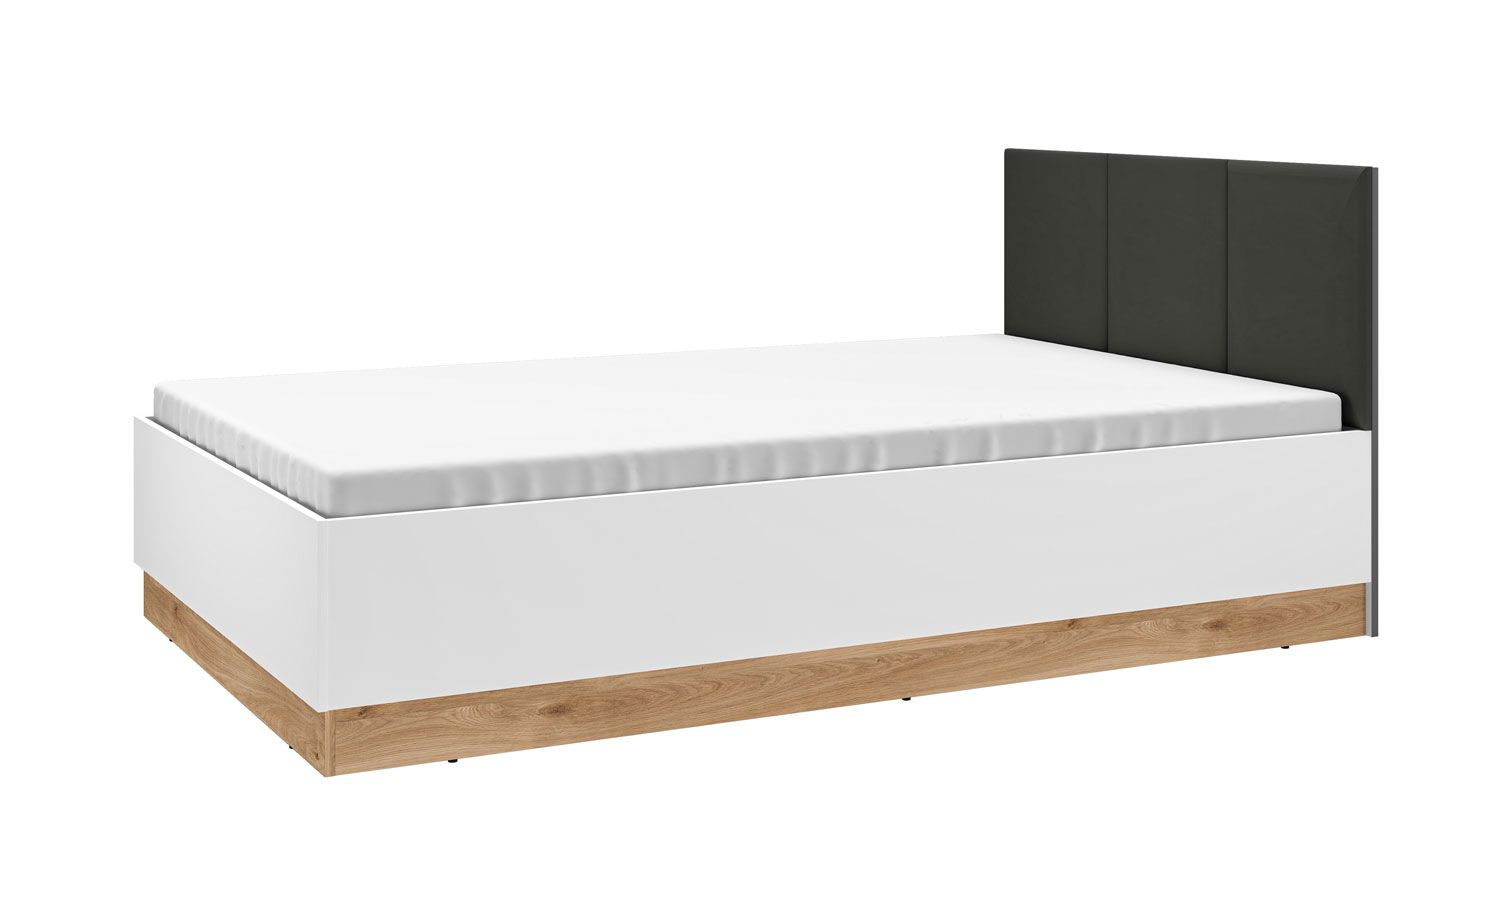 Einzelbett / Gästebett inkl. Lattenrost Mackinac 13, Farbe: Weiß / Eiche / Grafit matt, Liegefläche: 120 x 200 cm, ABS-Kantenschutz